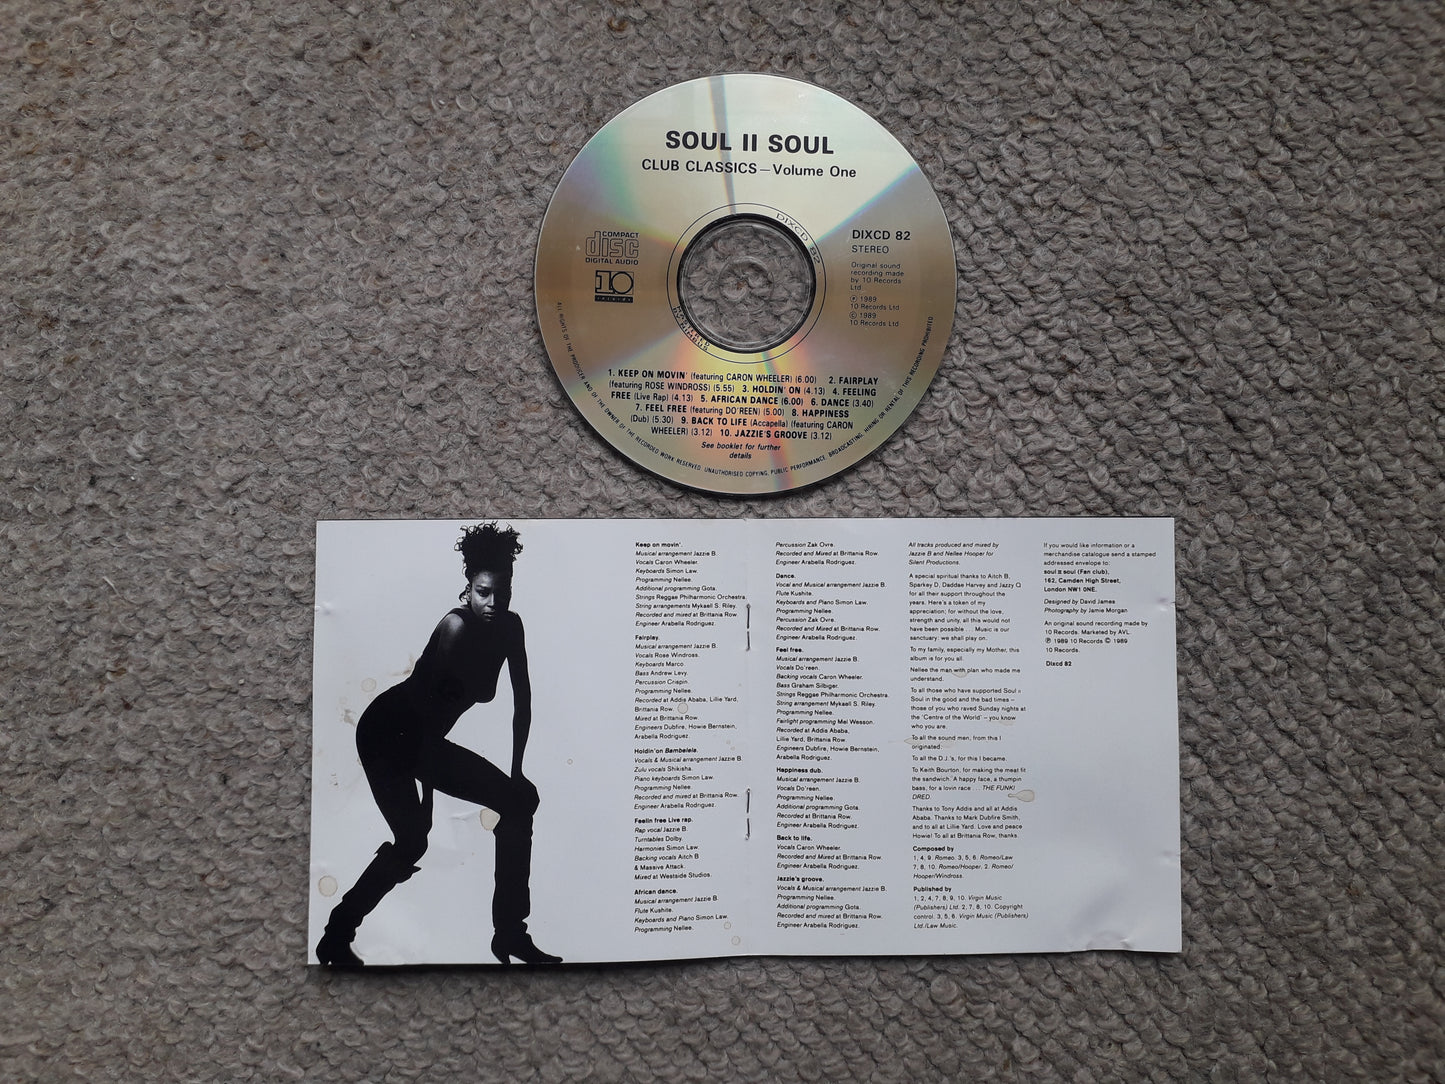 Soul II Soul-Club Classics Vol. One CD (Dix cd 82)